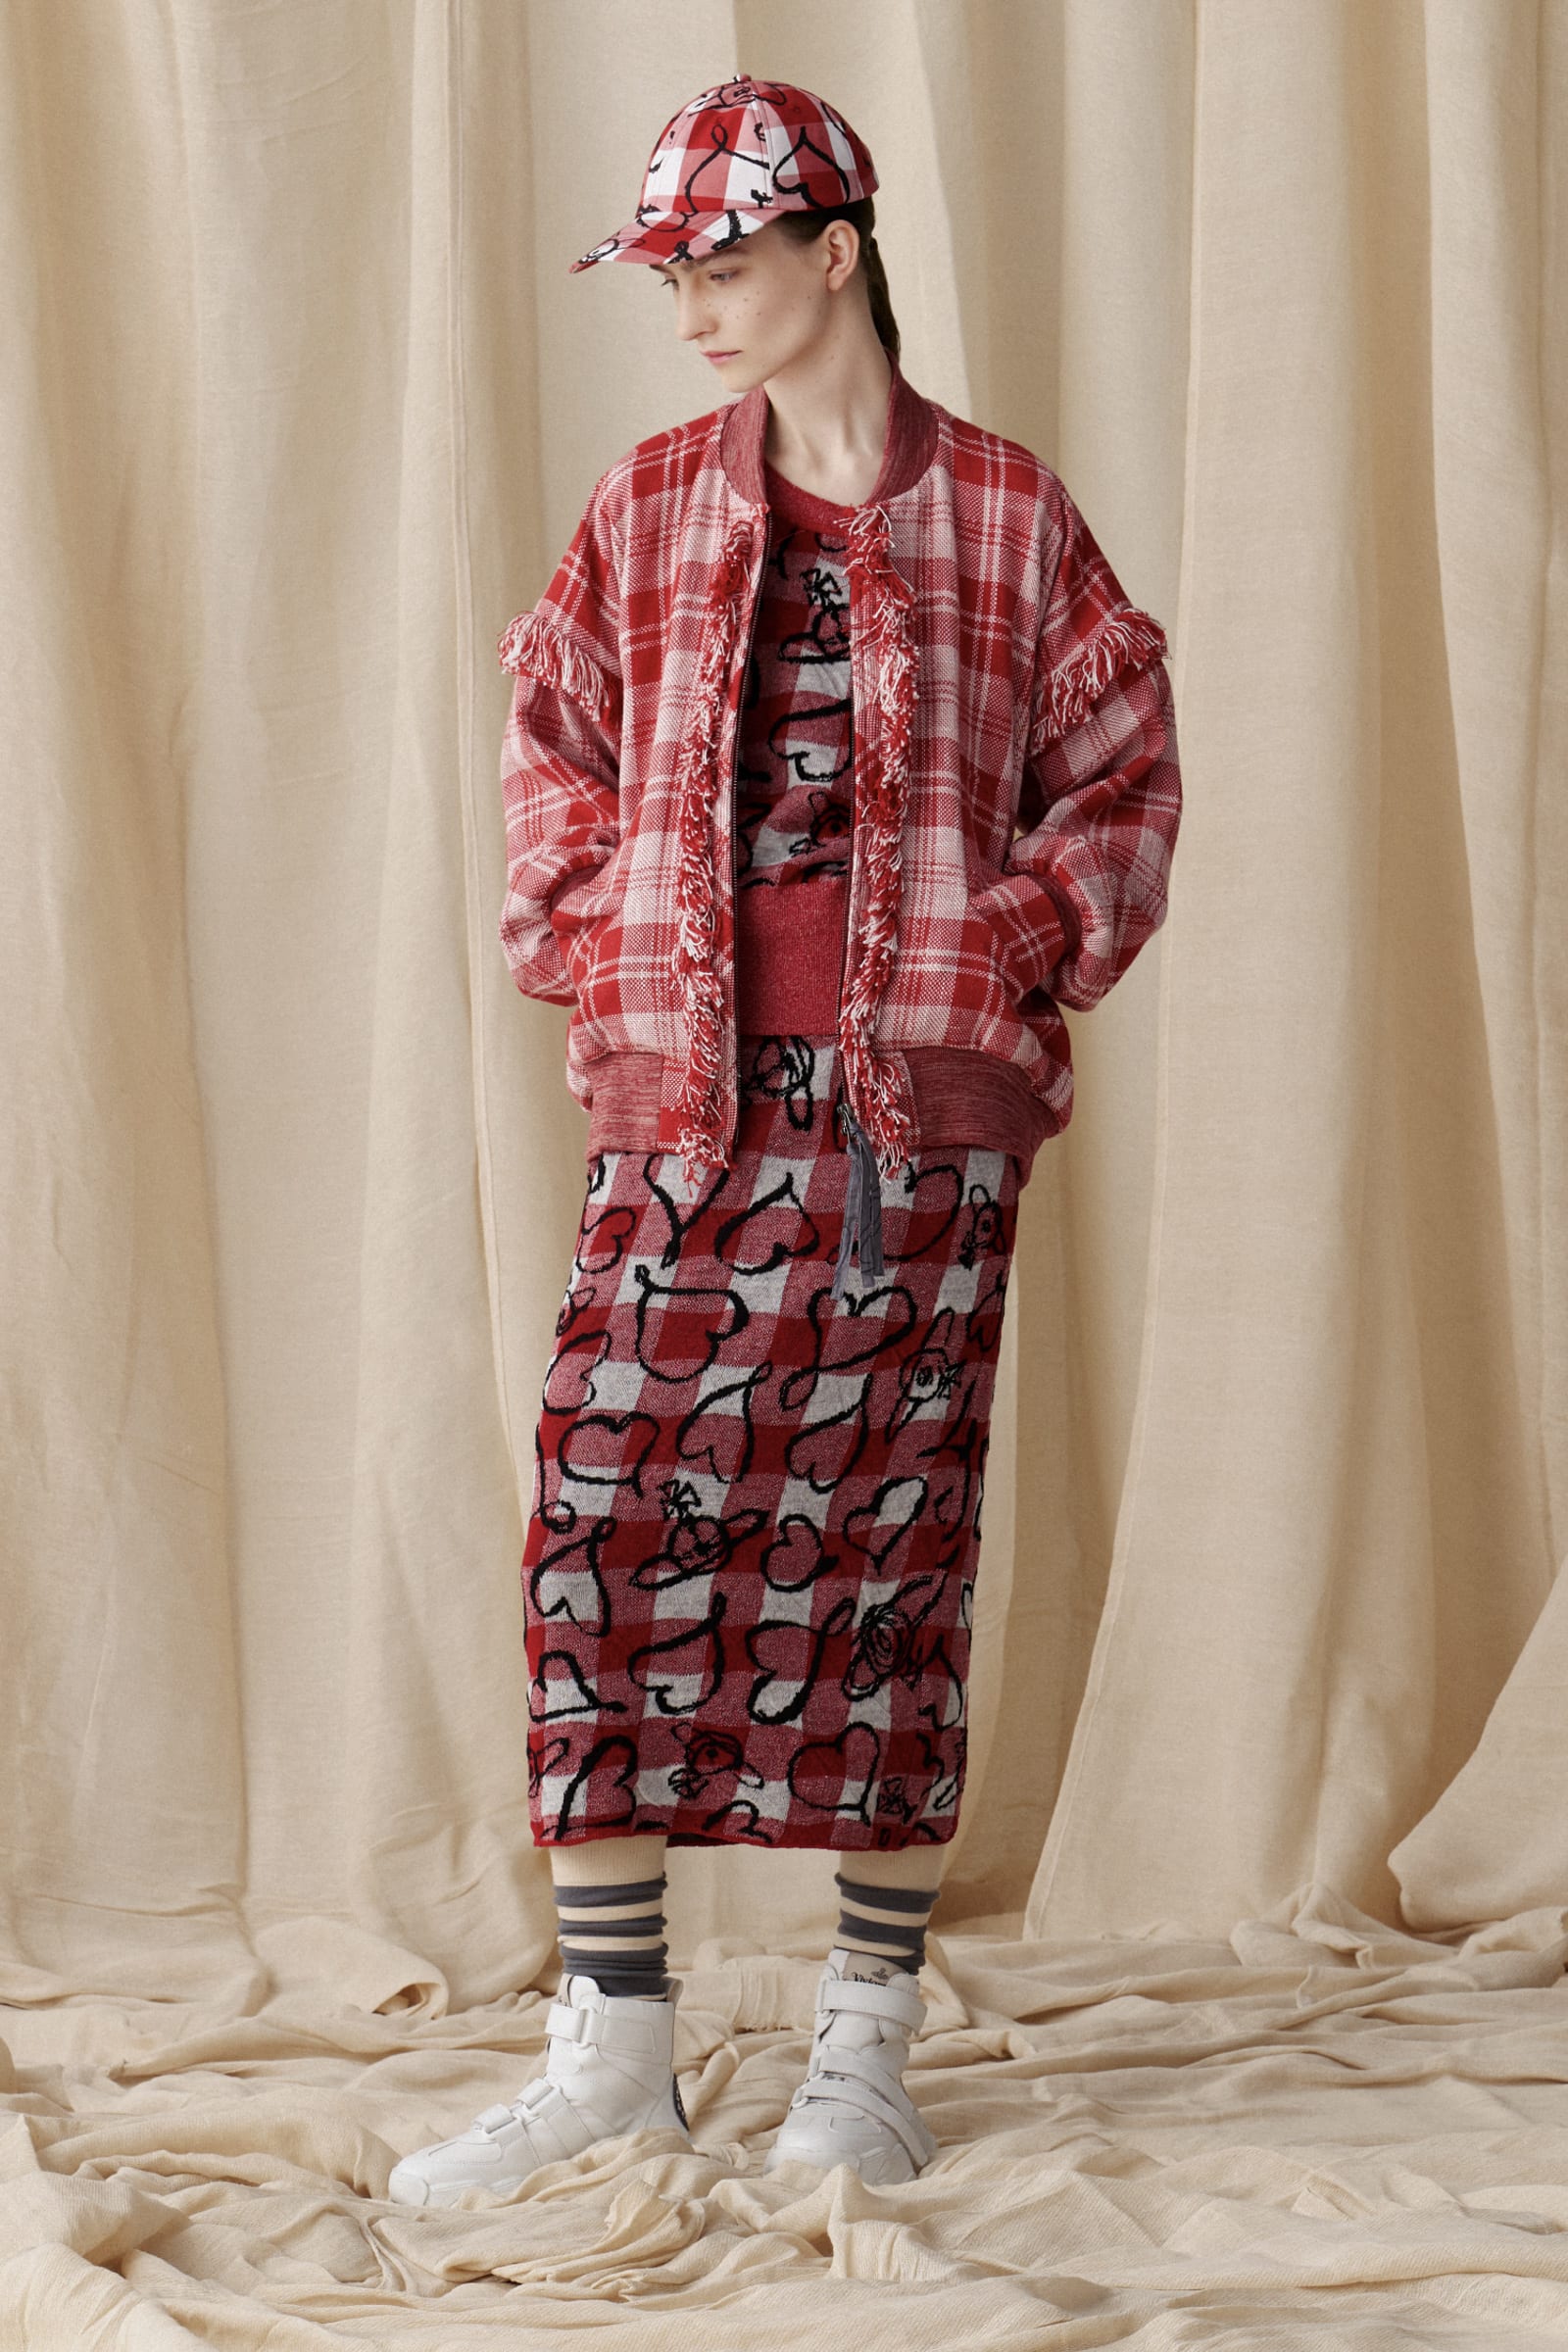 Vivienne Westwood RED LABEL 2022年春夏コレクション | 画像28枚 